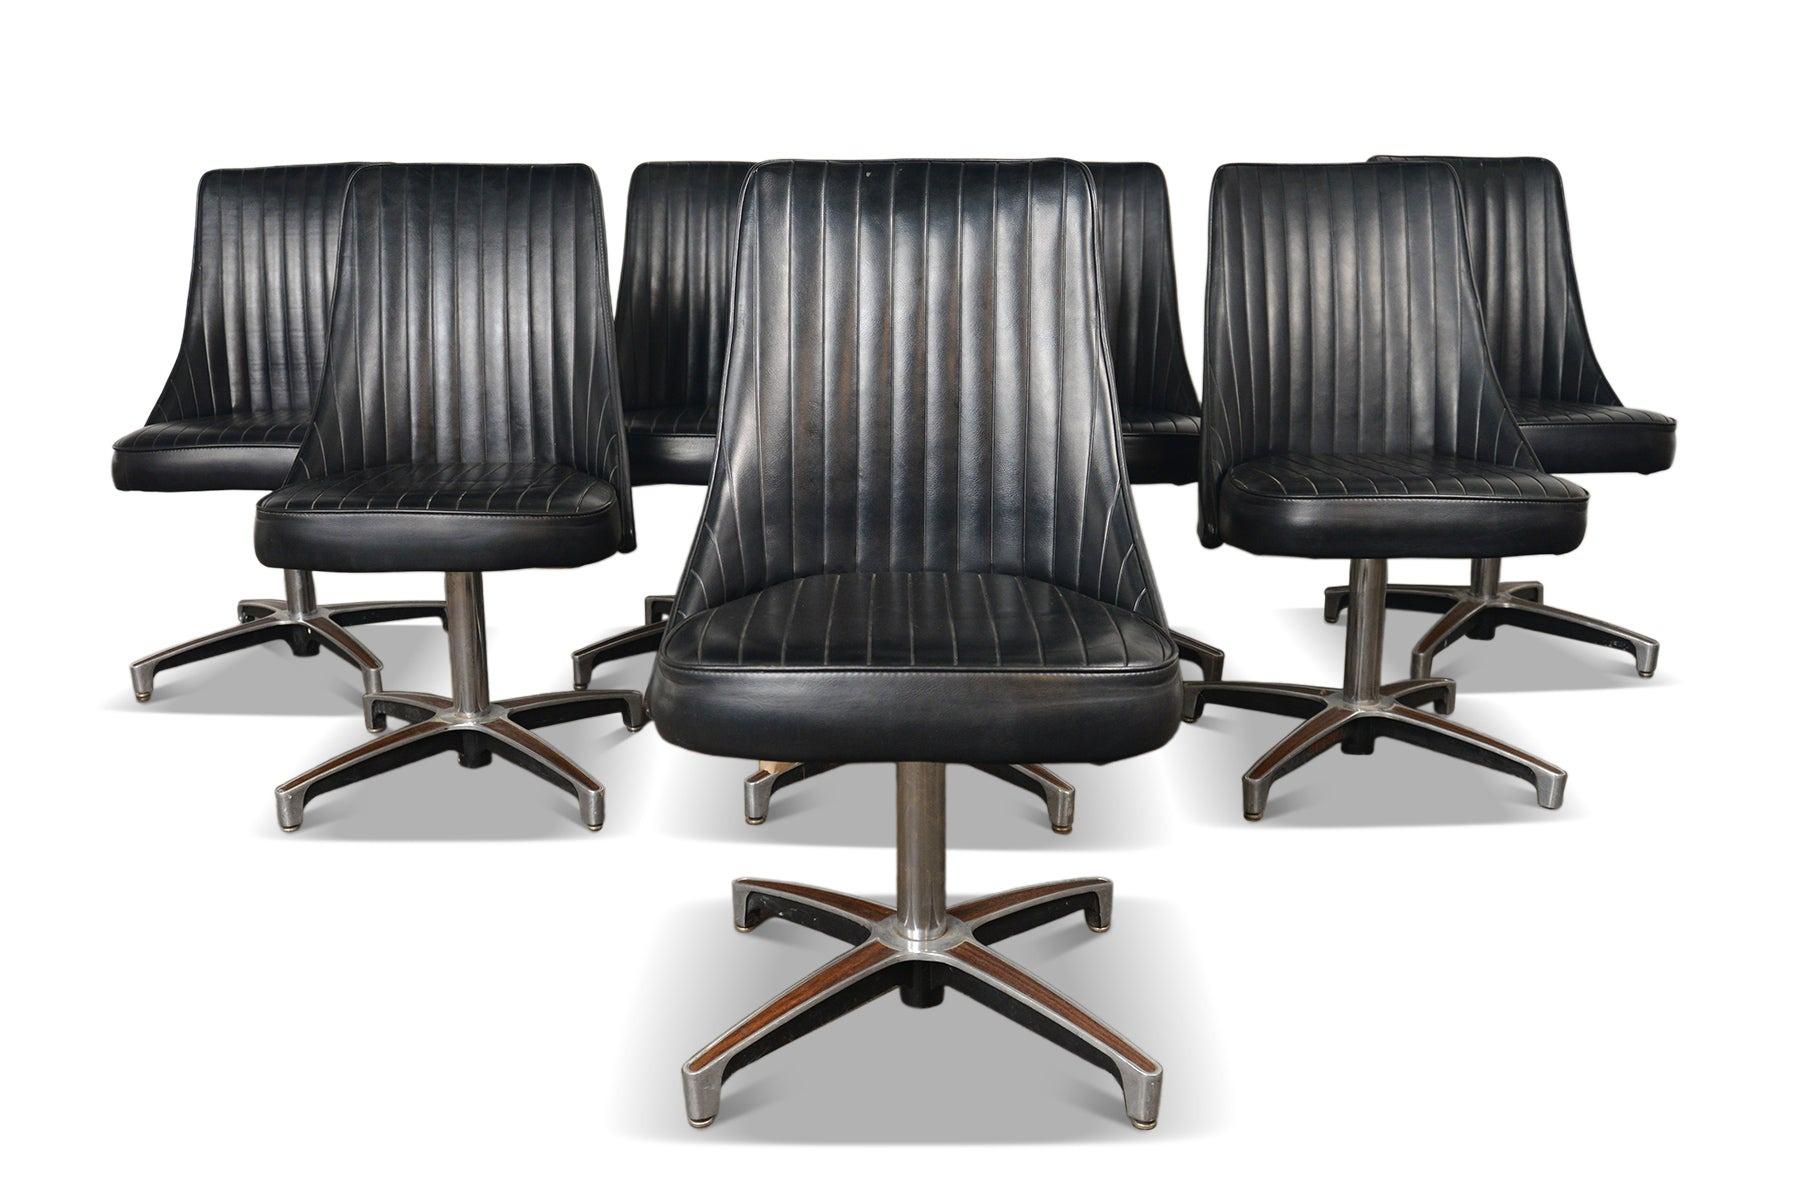 Ensemble de chaises longues Chromcraft des années 1960, parfaites pour l'époque.  Cet ensemble porte son vinyle noir d'origine, avec des sièges reposant sur des bases pivotantes en aluminium moulé avec des incrustations en stratifié de noyer. 

Ils